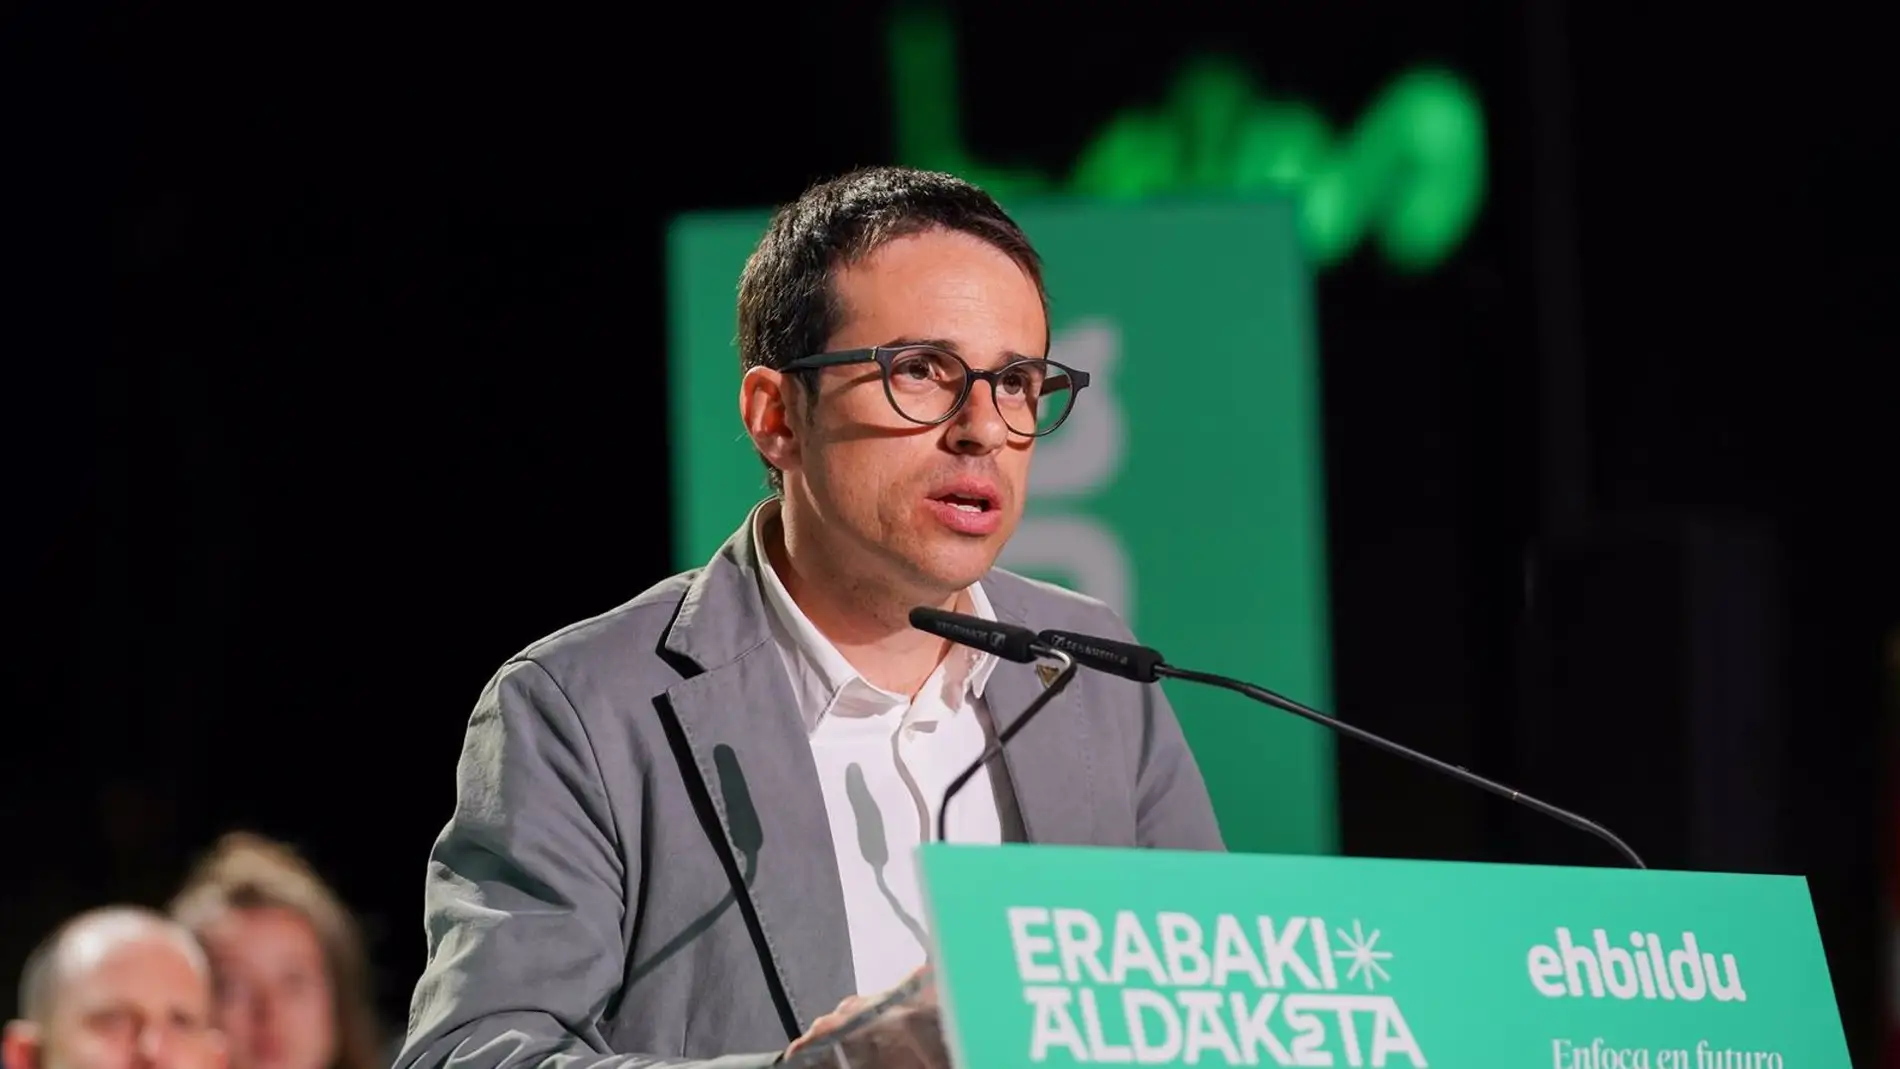 El candidato de Bildu en el País Vasco, Pello Otxandiano